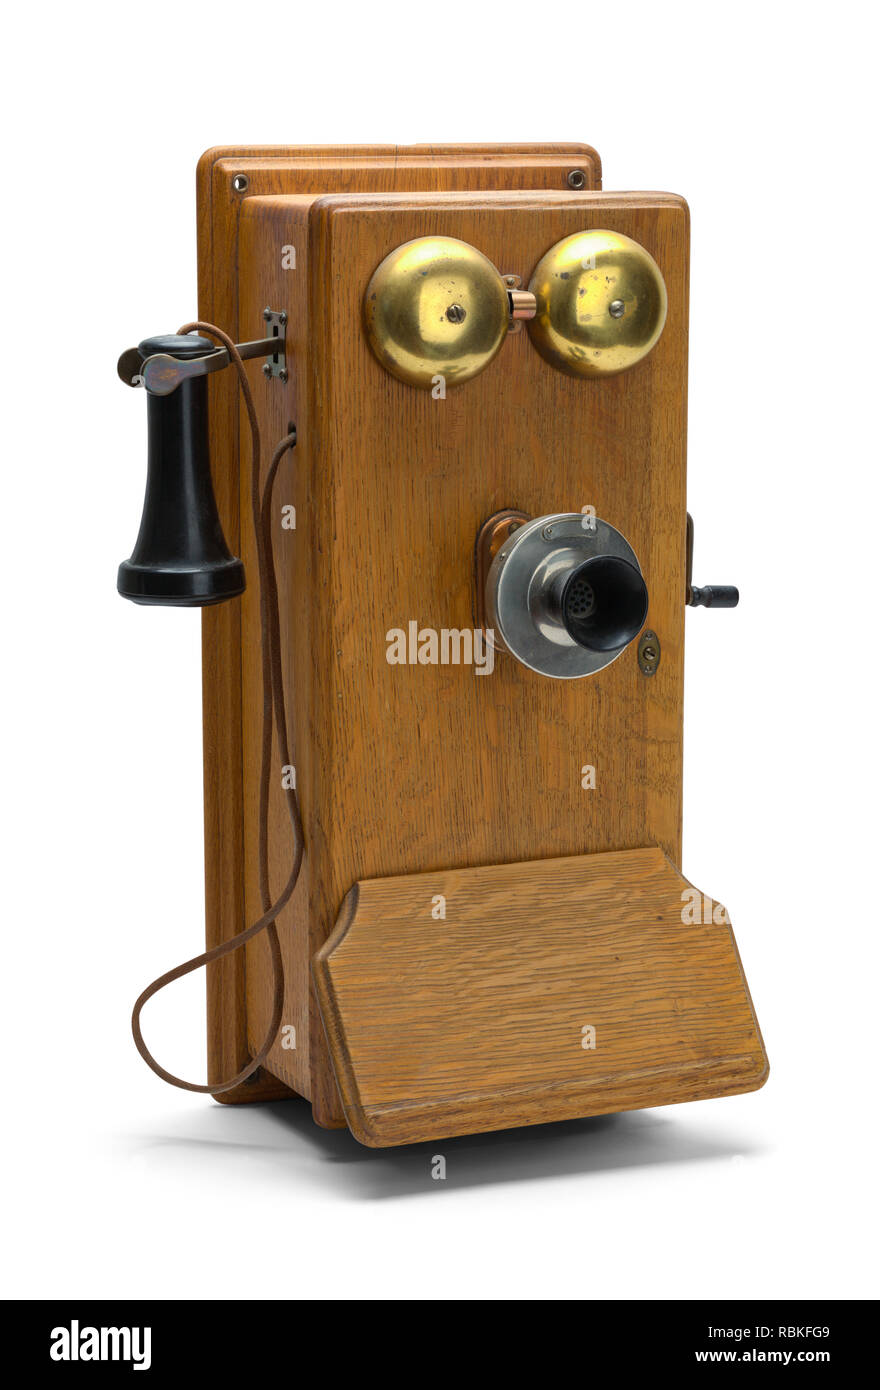 Teléfono Vintage Marrón con Botones – La Vieja